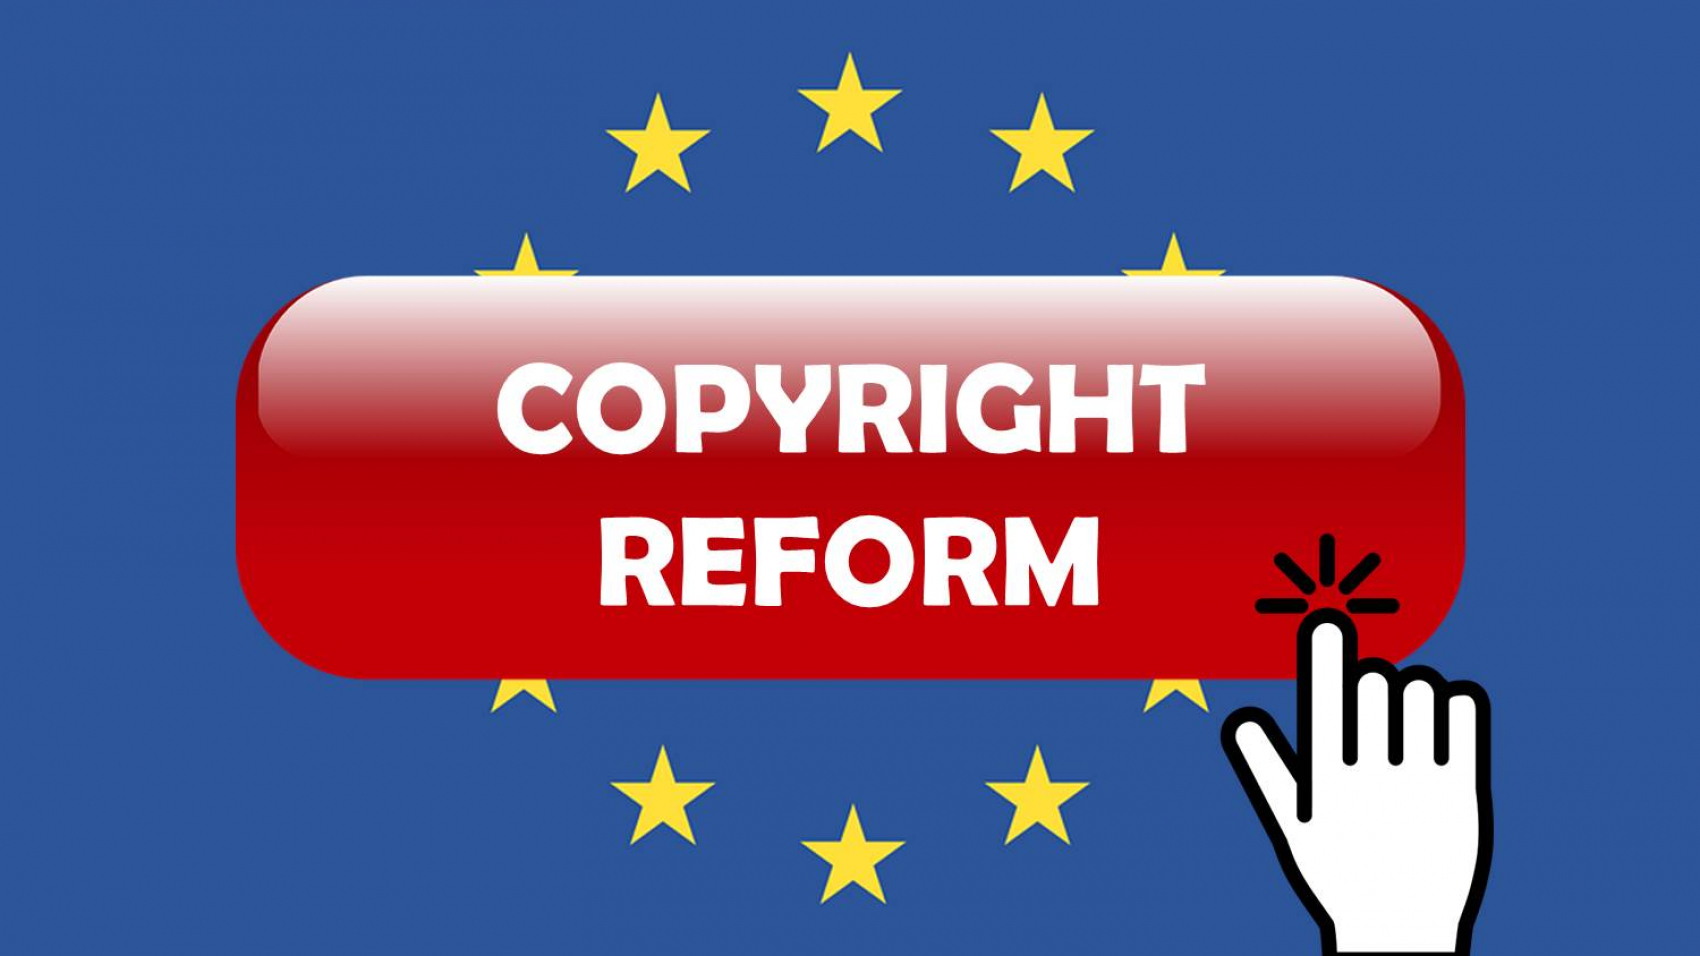 Urheberrecht_Copyright-Reform